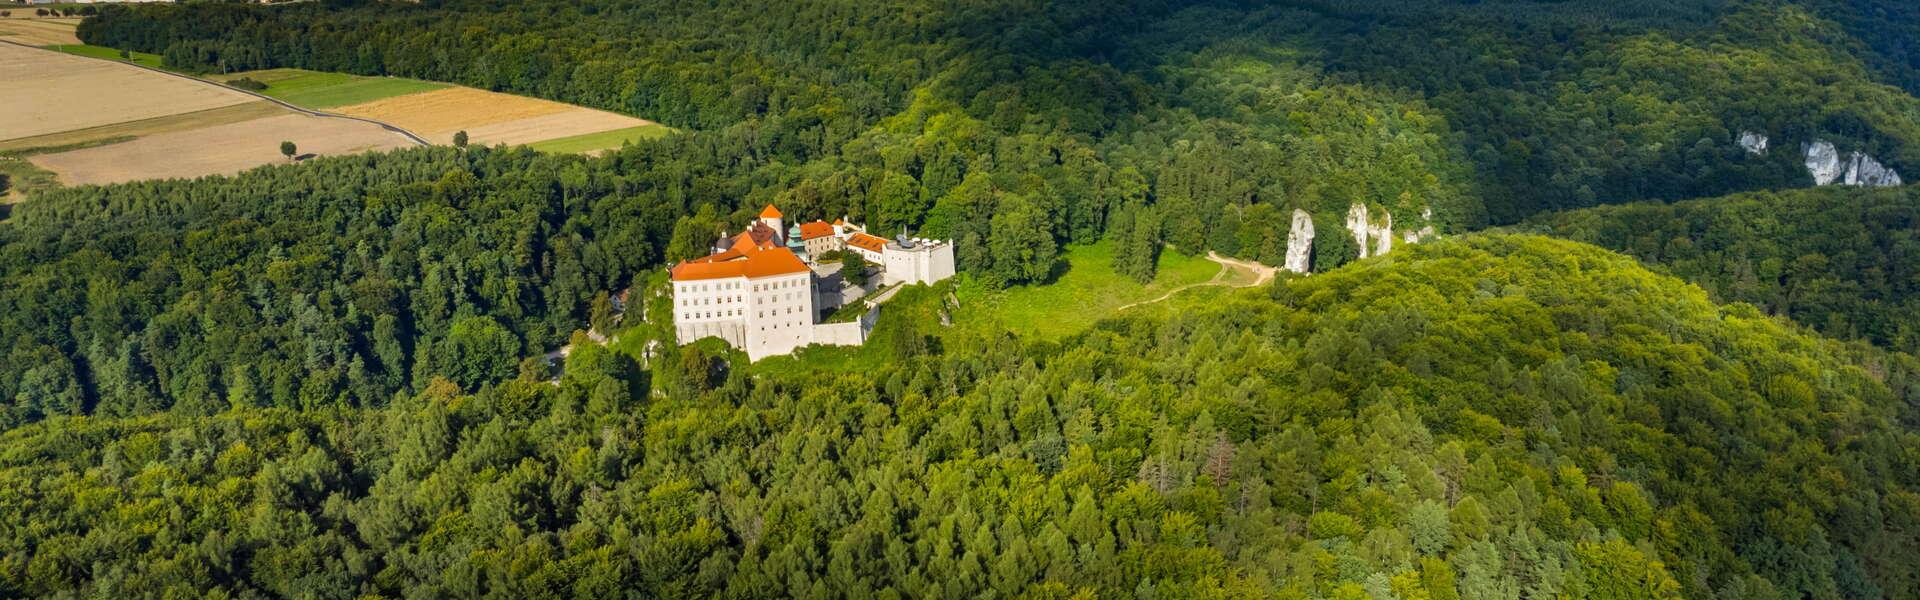 Dolina Prądnika w Ojcowskim Parku Narodowym. W tle zamek w Pieskowej Skale, w oddali zabudowania domów.